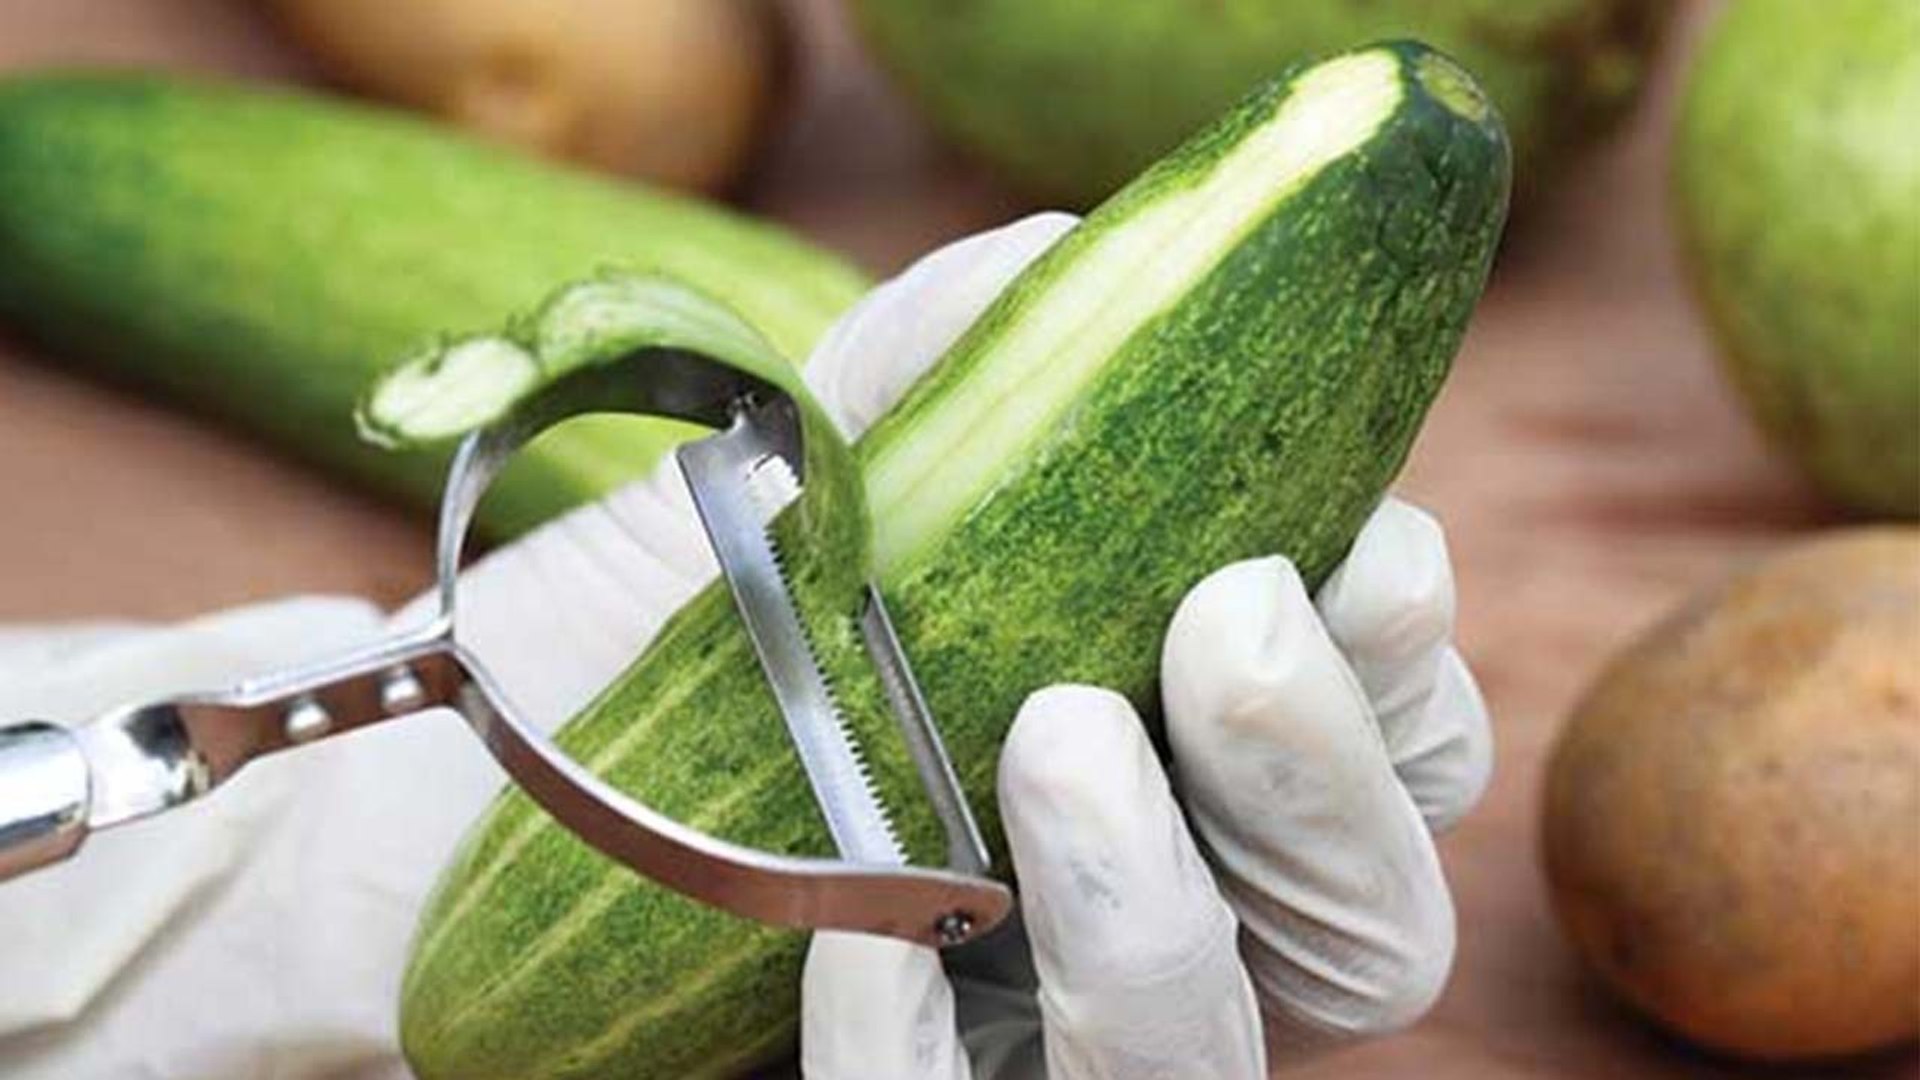 Cucumber का कड़वापन दूर करेंगी ये आसान सी Tips| Boldsky